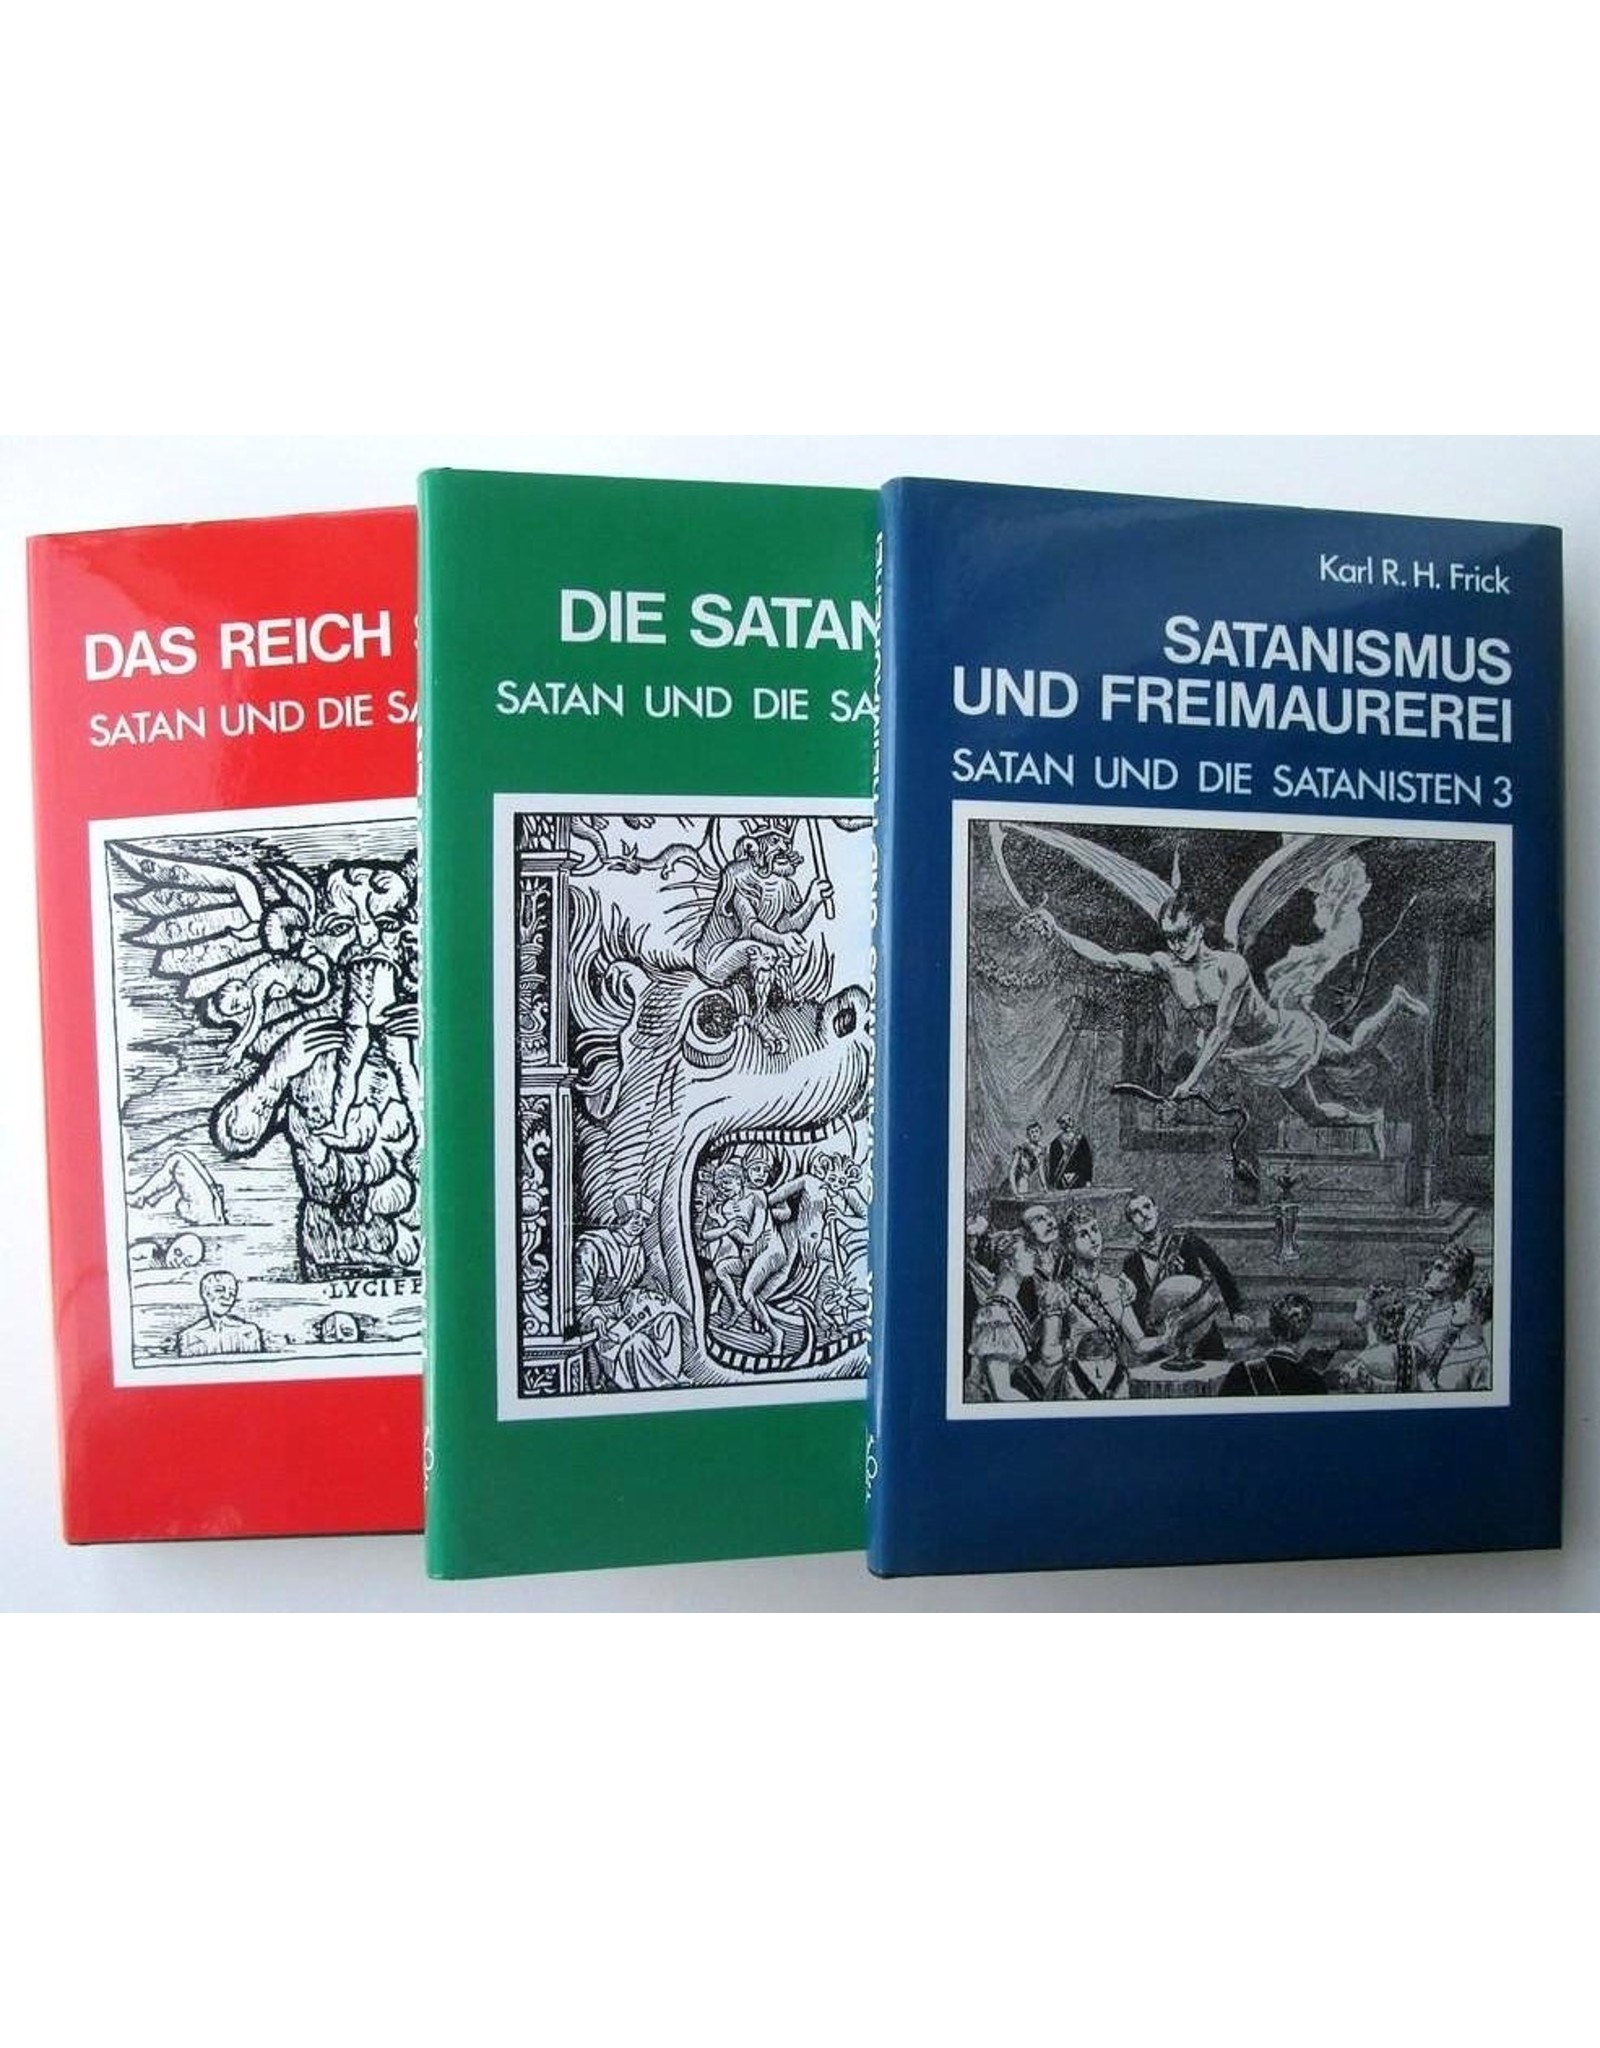 Karl R.H. Frick - Satan und die Satanisten [complete set] - Das Reich Satans [1], Die Satanisten [2], Satanismus und Freimaurerei [3]